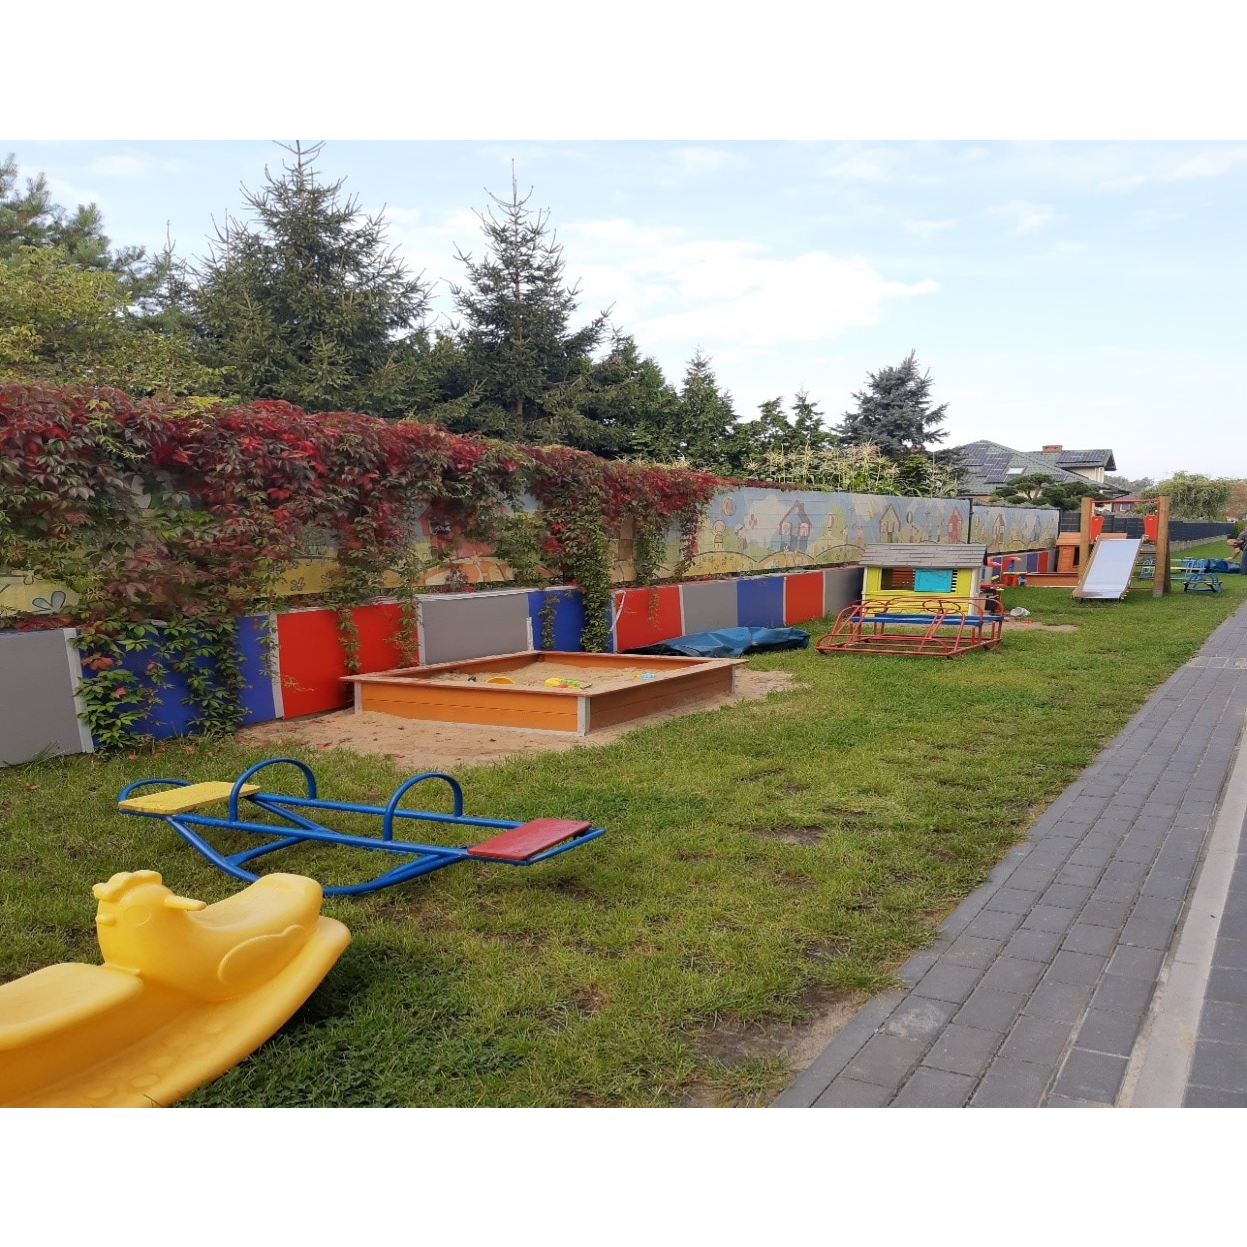 Zdjęcie placu zabaw wzdłuż ogrodzenia przedszkola
Zdjęcie placu zabaw wzdłuż ogrodzenia przedszkola